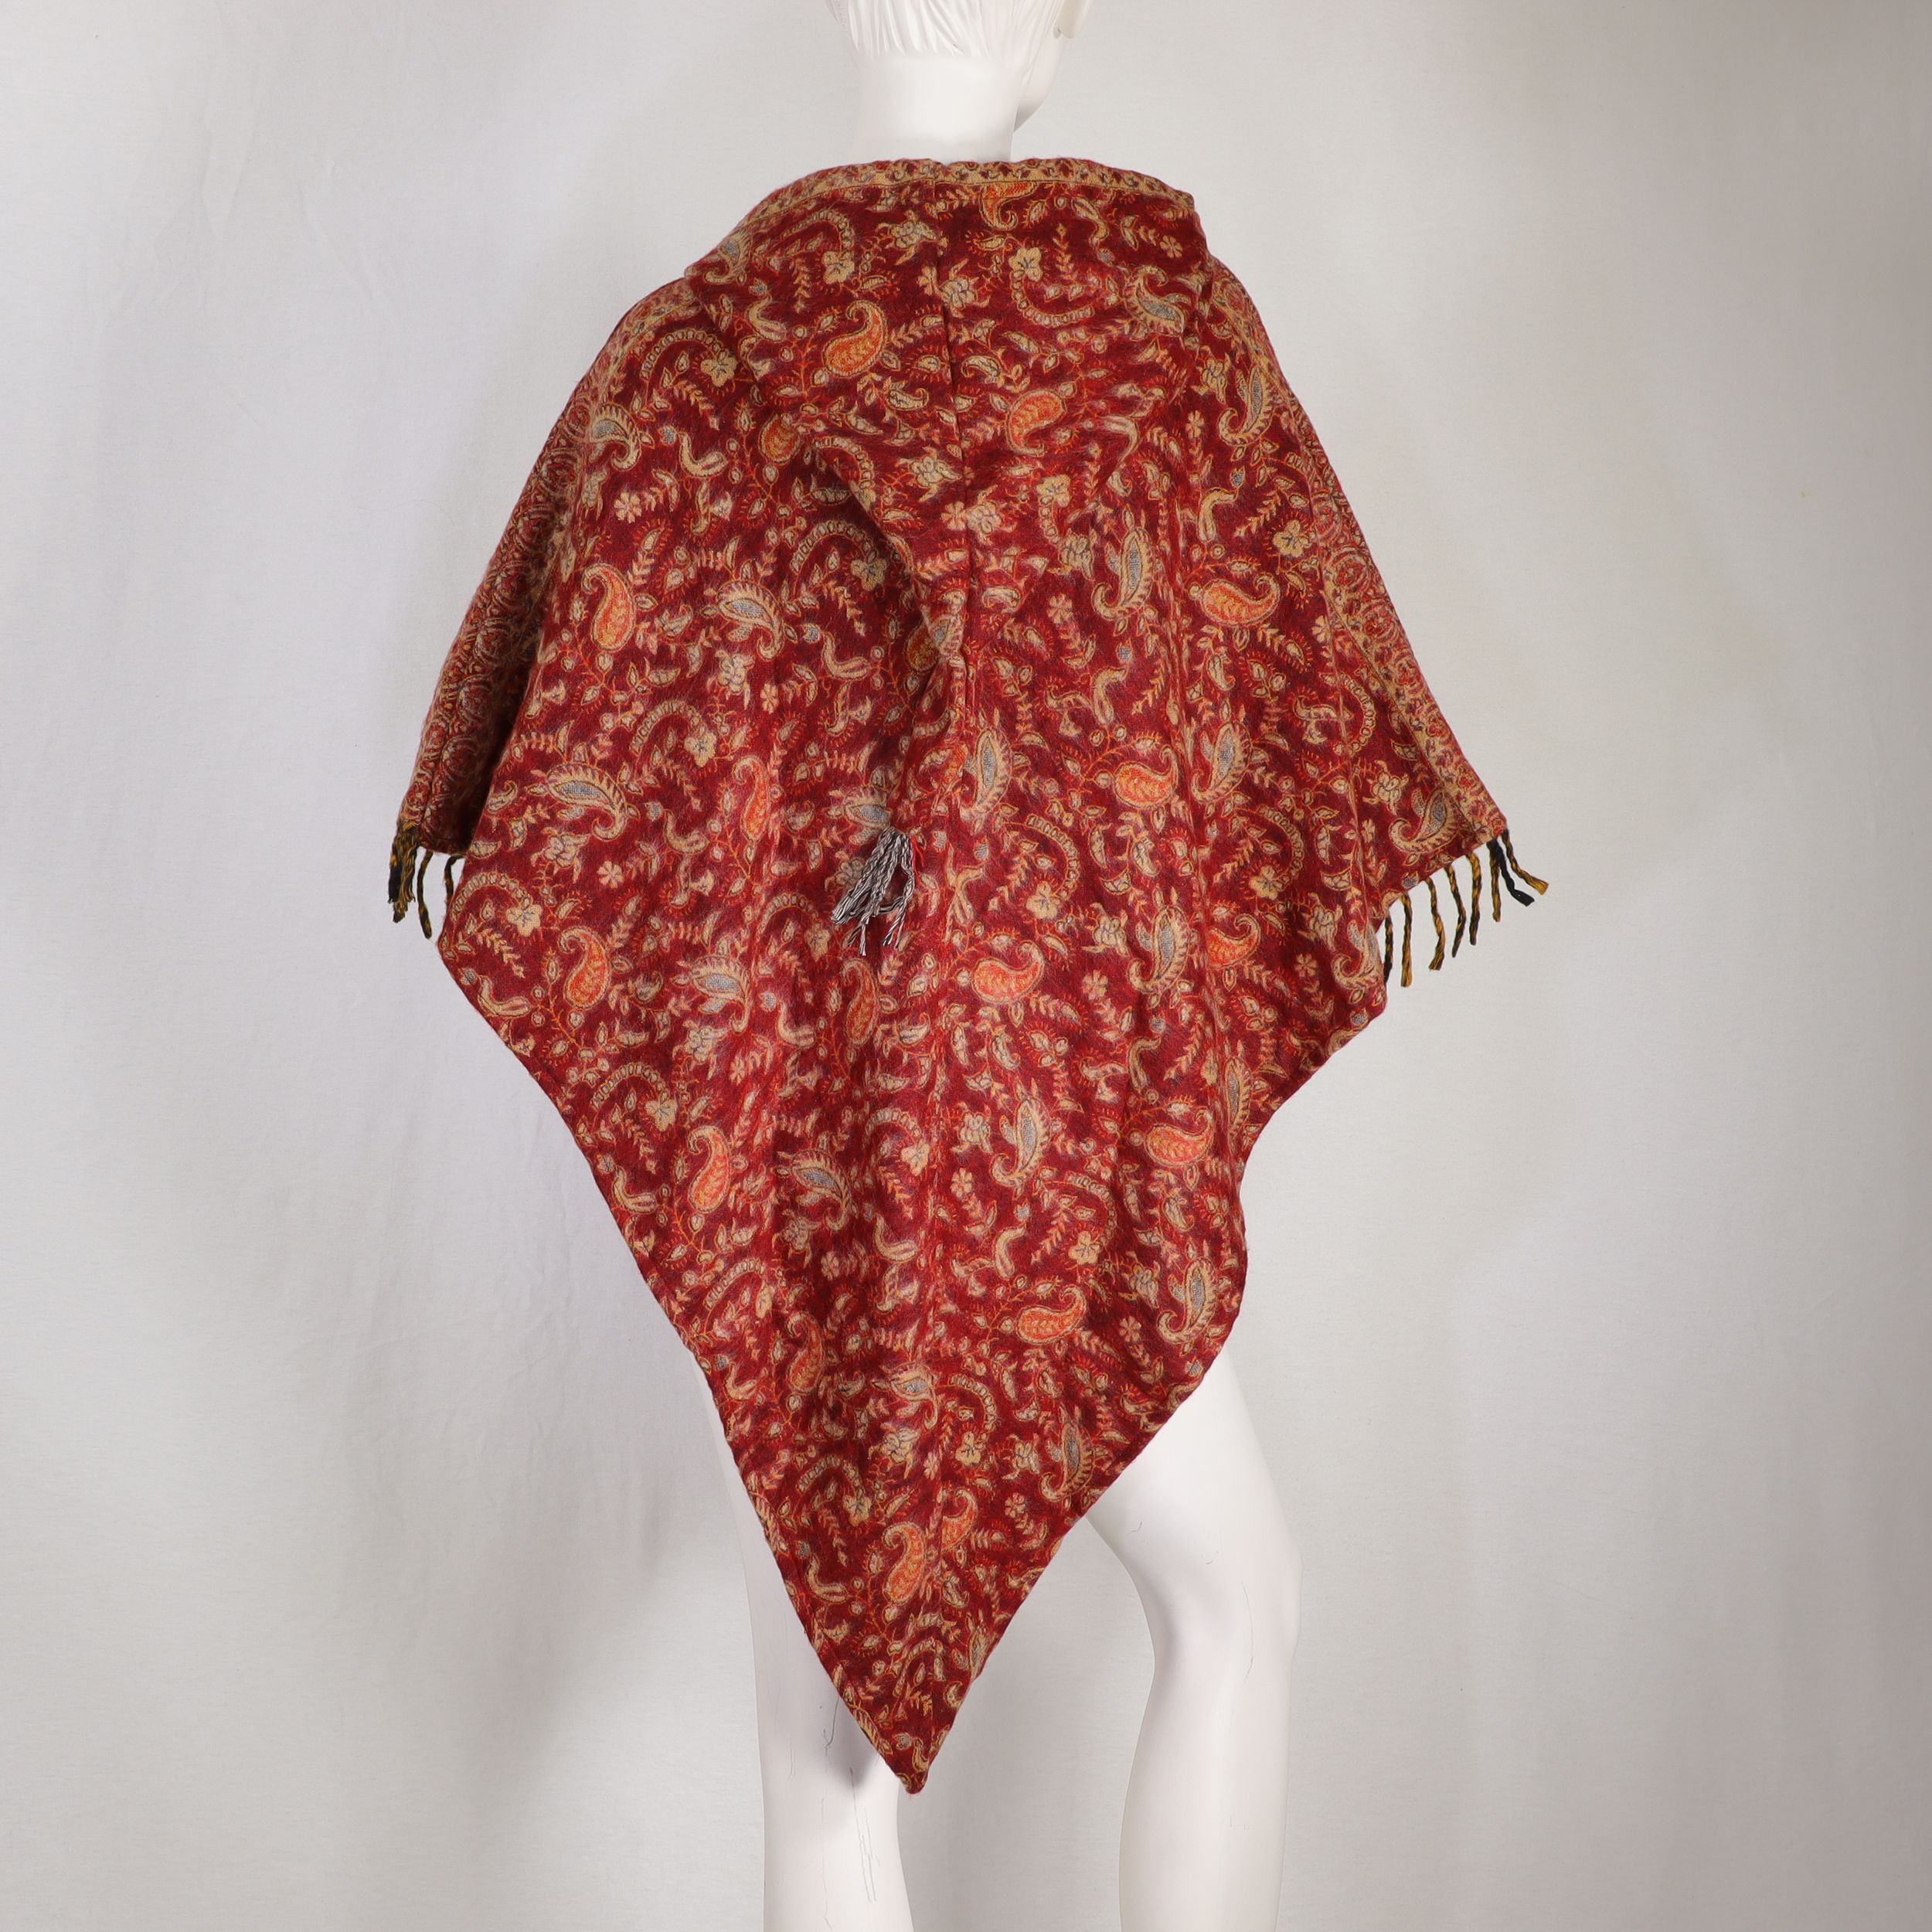 Poncho mit tollem Paisley-Muster - aus typisch nepalesischen Yakdecken gefertigt - mit Kapuze und Tasche - warm und flexibel - einfach Überwerfen fertig - Fair gehandelt aus Nepal